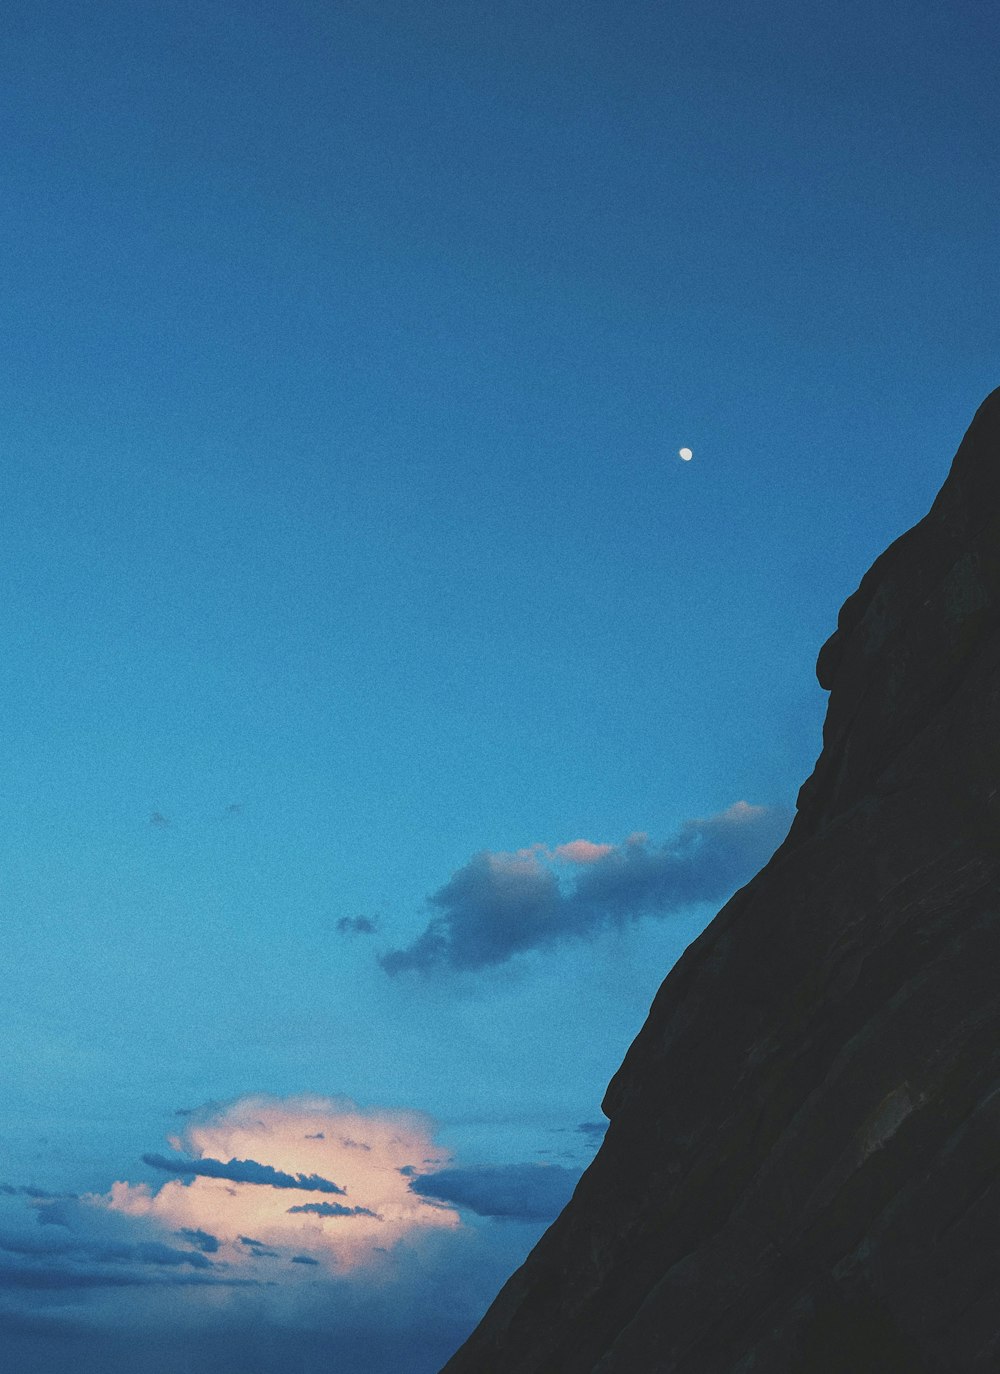 La luna se está poniendo detrás de la cima de una montaña